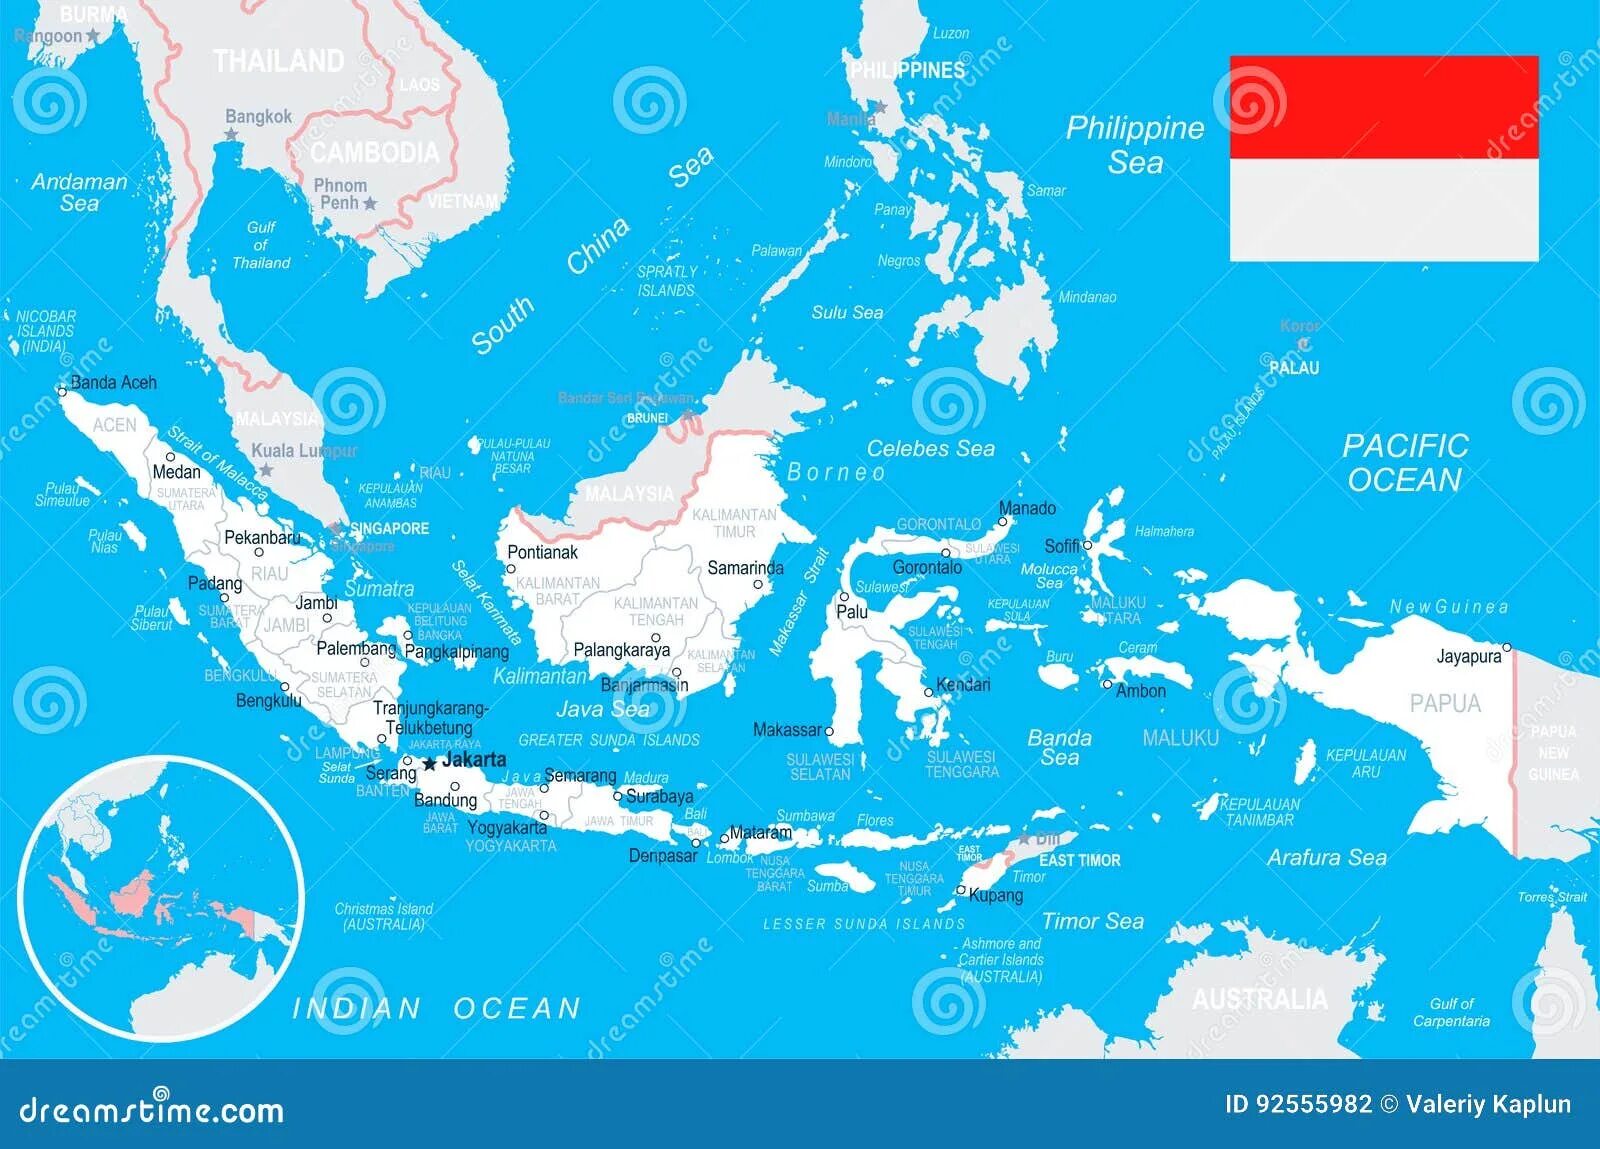 Индонезия на карте.